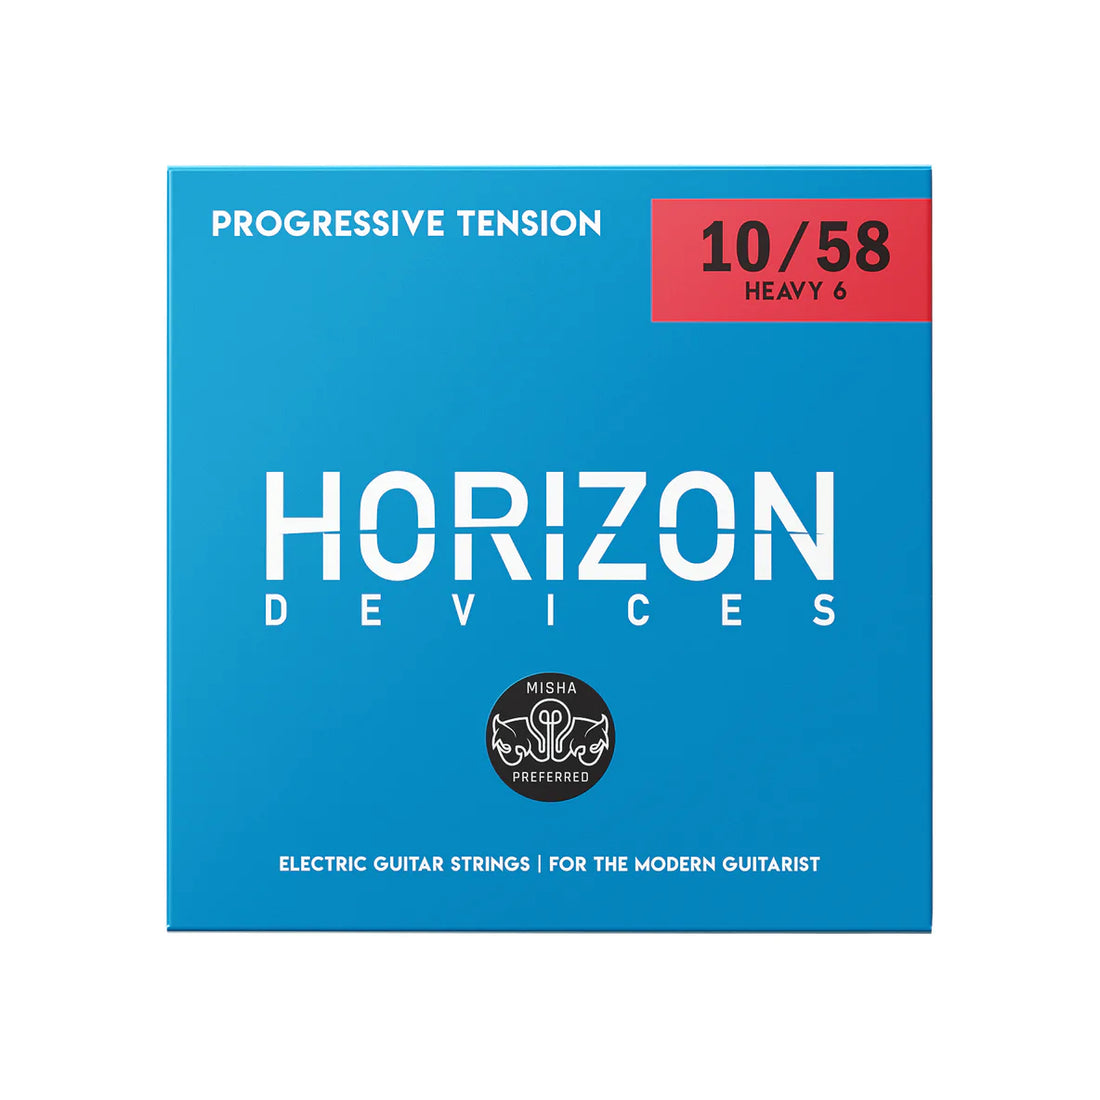 Horizon Devices Progressive Tension Heavy 6 (Misha Preferred)